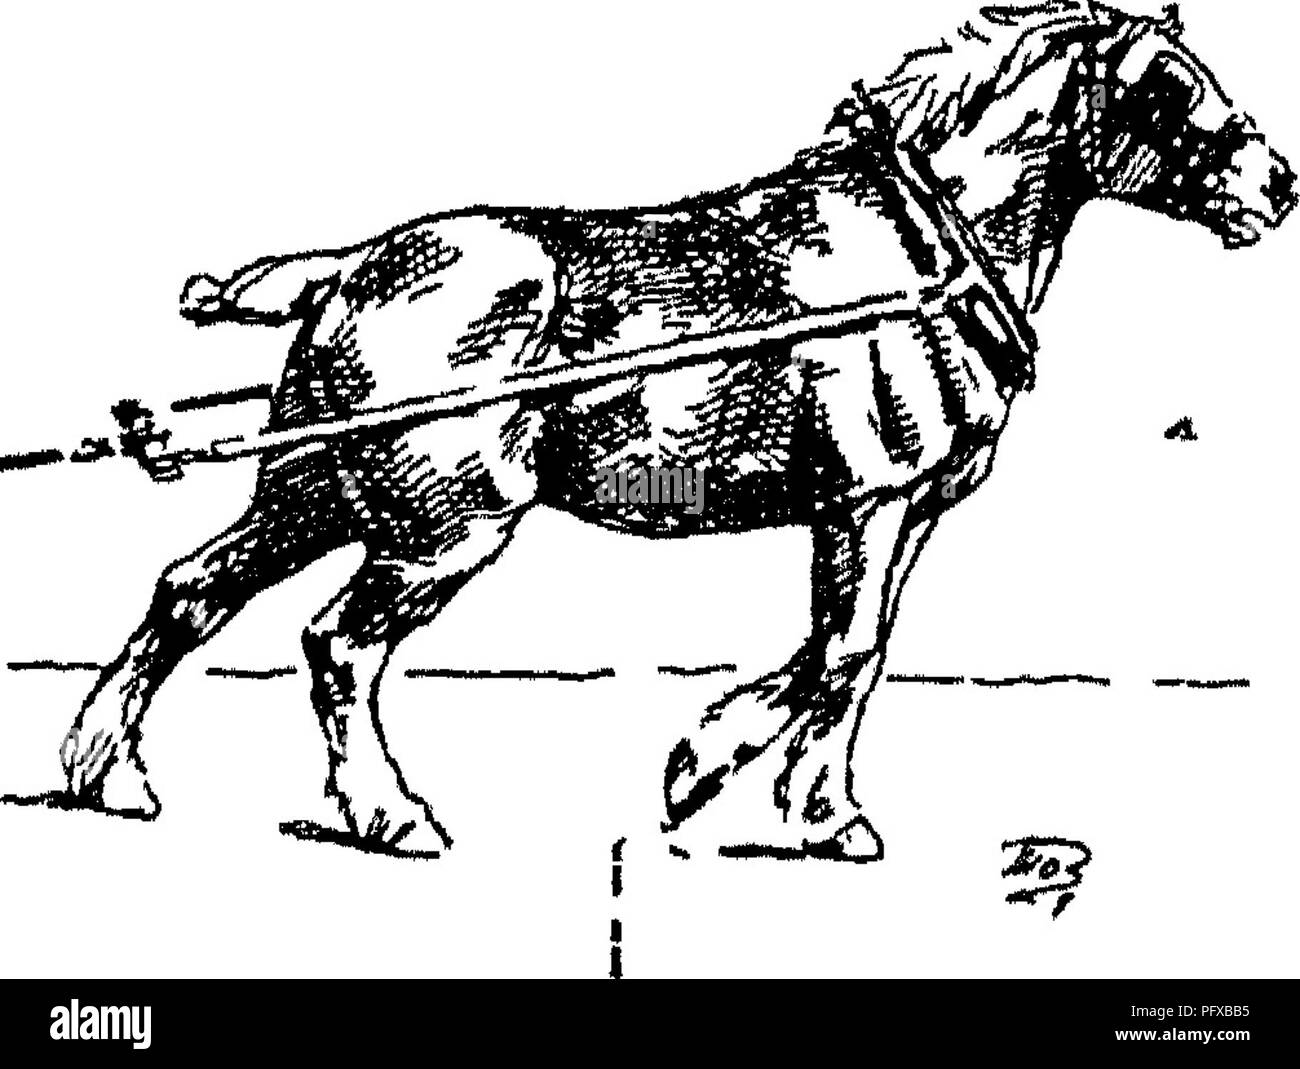 . Punkte des Pferdes; eine Abhandlung über den Körperbau, Bewegungen, Rassen und Evolution des Pferdes. Pferde. Abb. 91. Abb. 92. Bitte beachten Sie, dass diese Bilder sind von der gescannten Seite Bilder, die digital für die Lesbarkeit verbessert haben mögen - Färbung und Aussehen dieser Abbildungen können nicht perfekt dem Original ähneln. extrahiert. Hayes, M. Horace (Matthäus Horace), 1842-1904. London, W. Thacker &Amp; Co Stockfoto